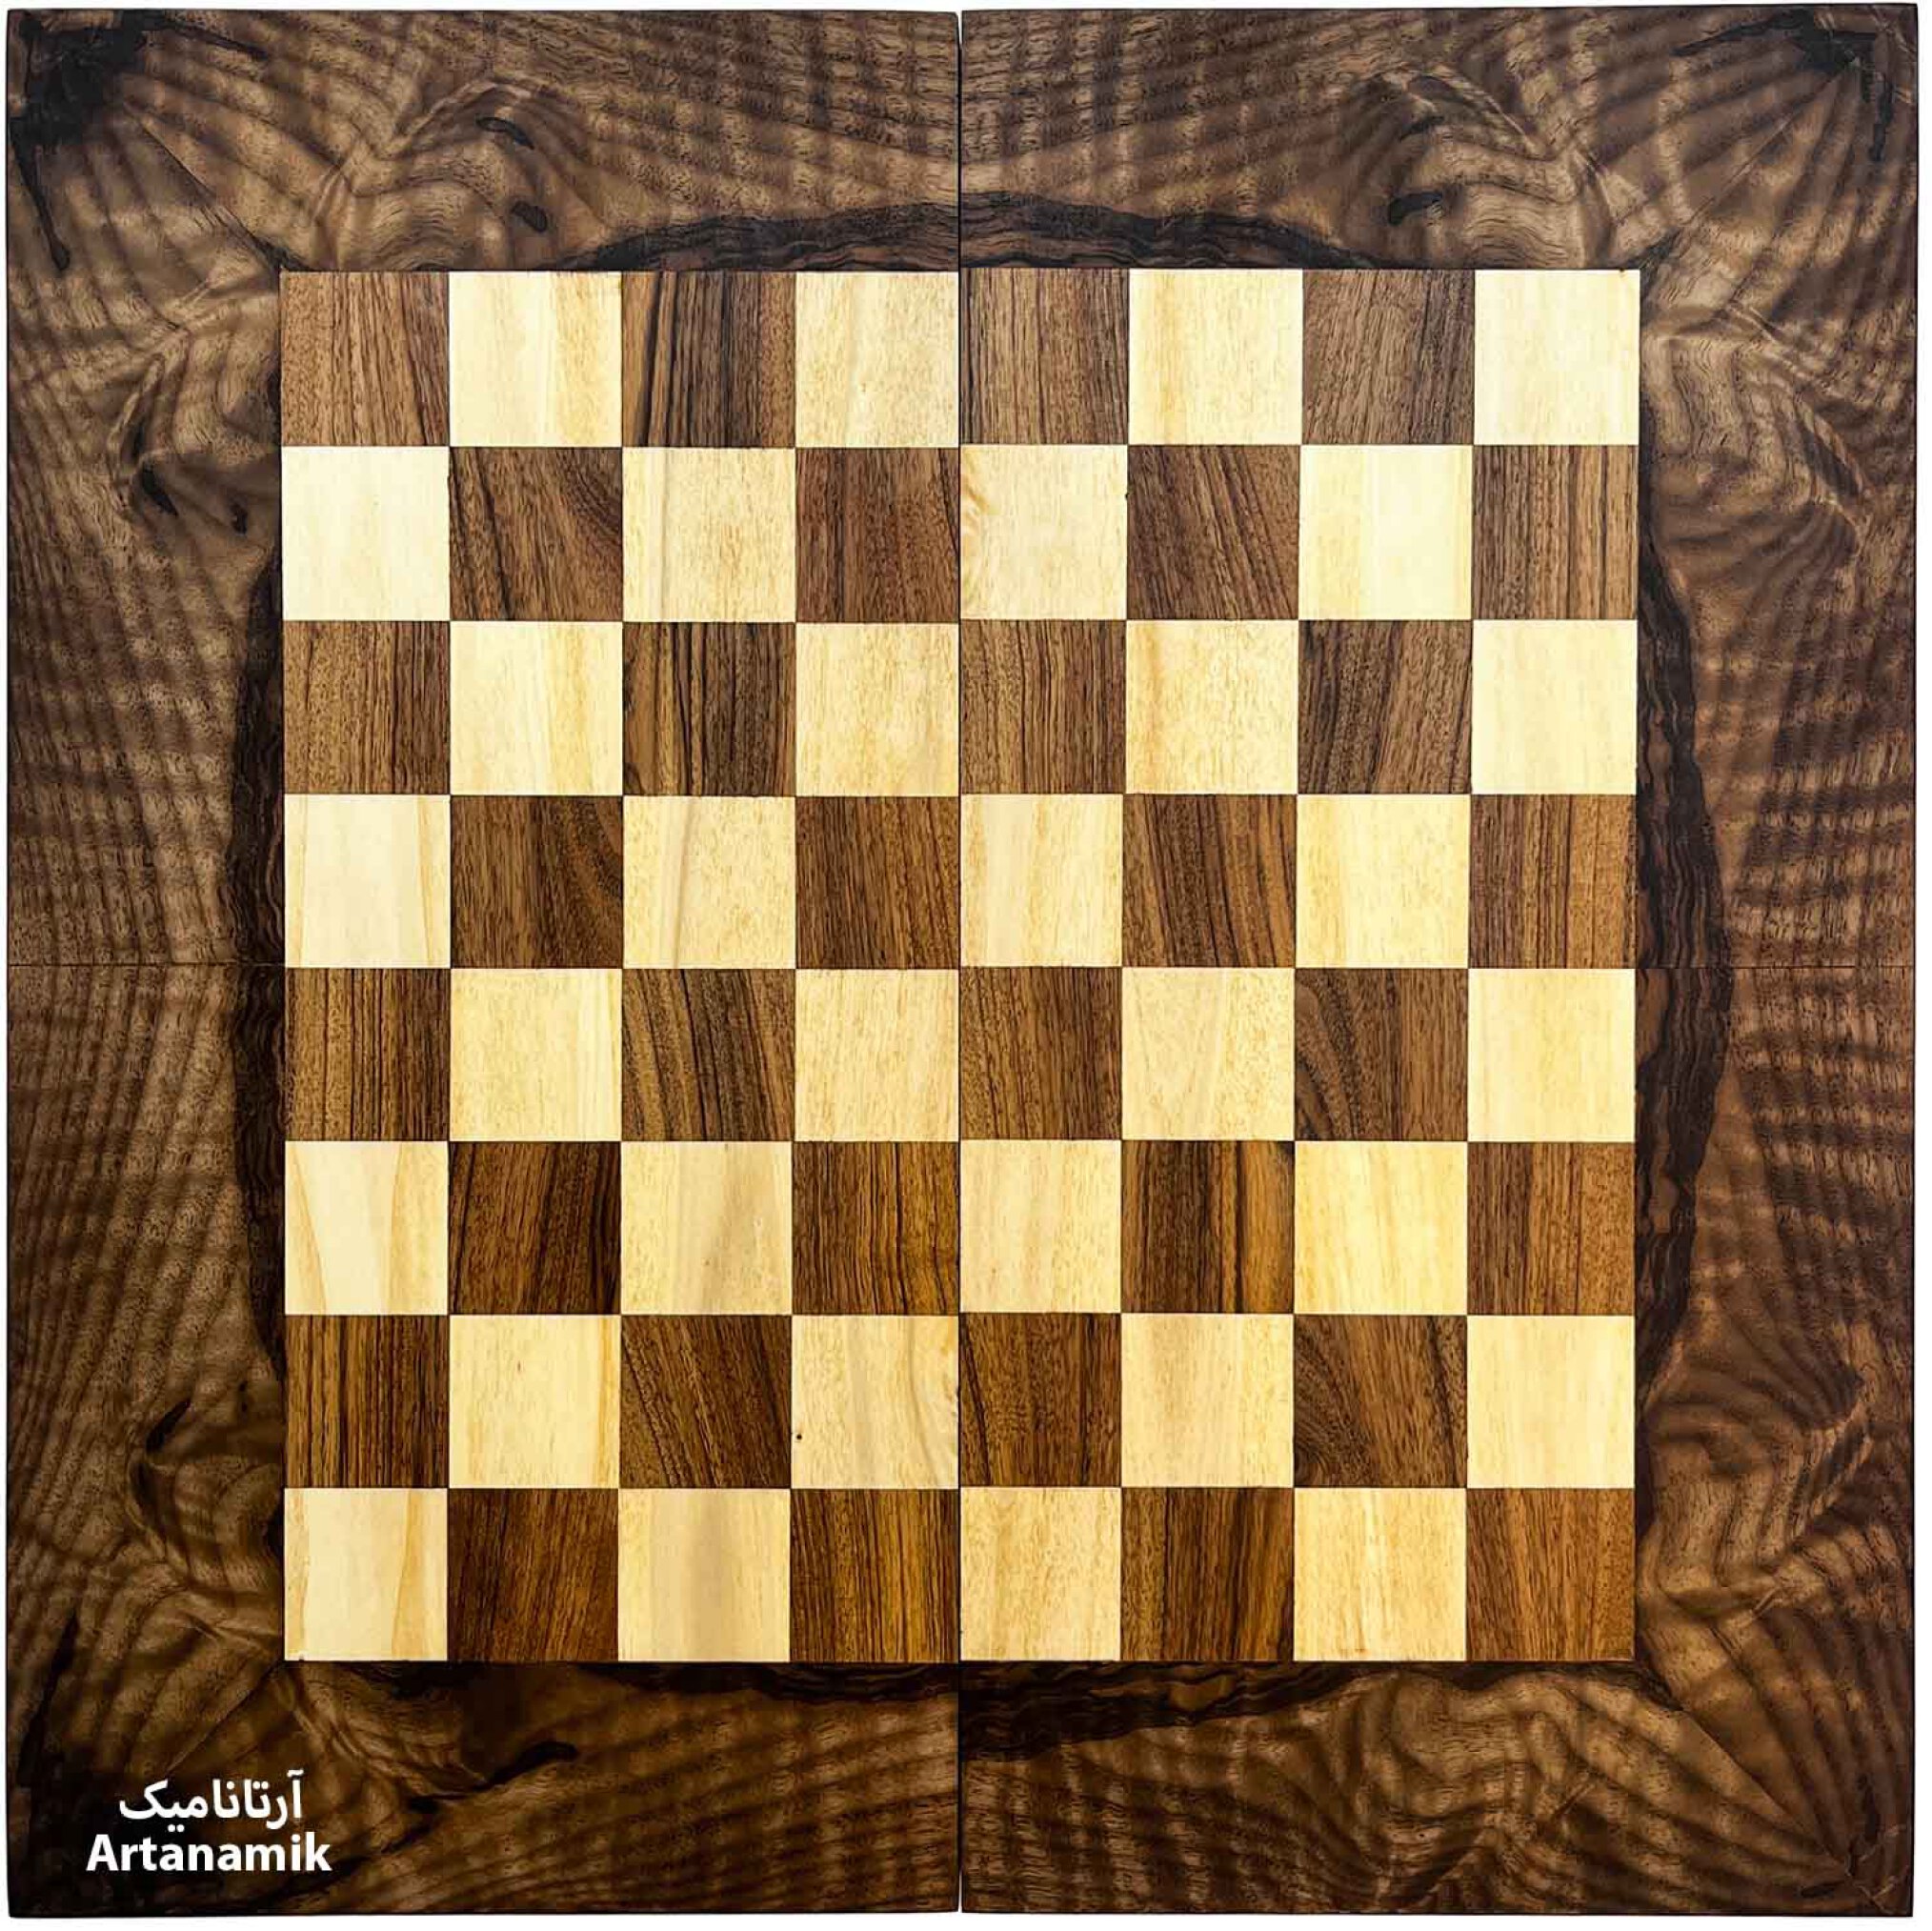  شطرنج چوب گردو با کیفیت همراه با تخته نرد 